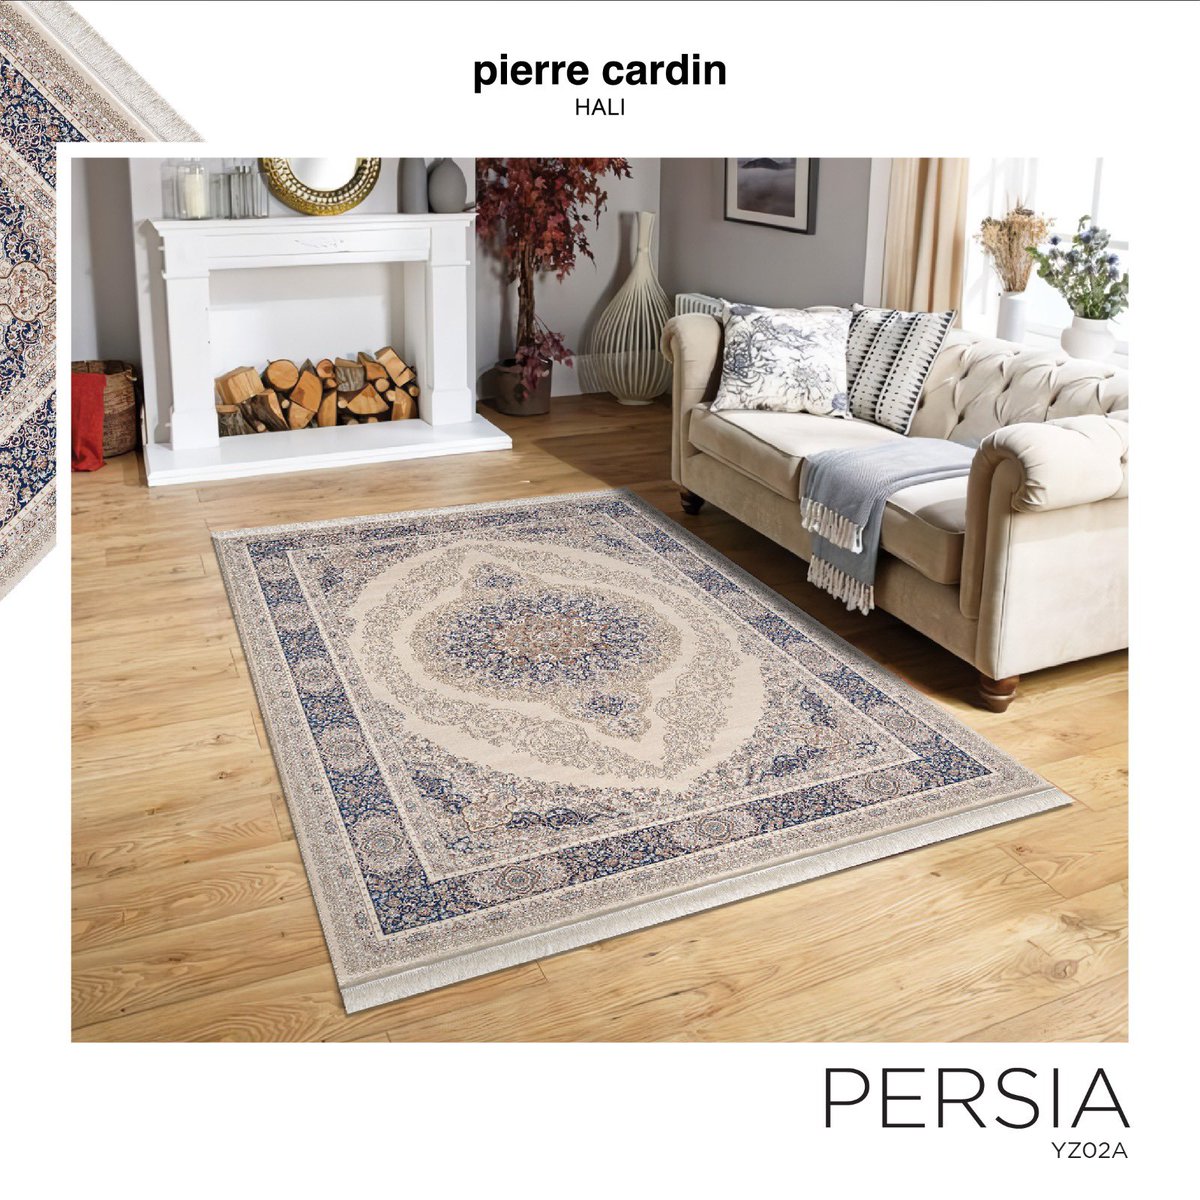 Tasarımda zarafetin yansıması…
Yeni Persia Koleksiyonu çok yakında tüm showroom ve satış noktalarında!

#PierreCardinHalı #PierreCardin #Persia #Halı #SiziYansıtır #Carpet #HomeCollection #HomeDesign